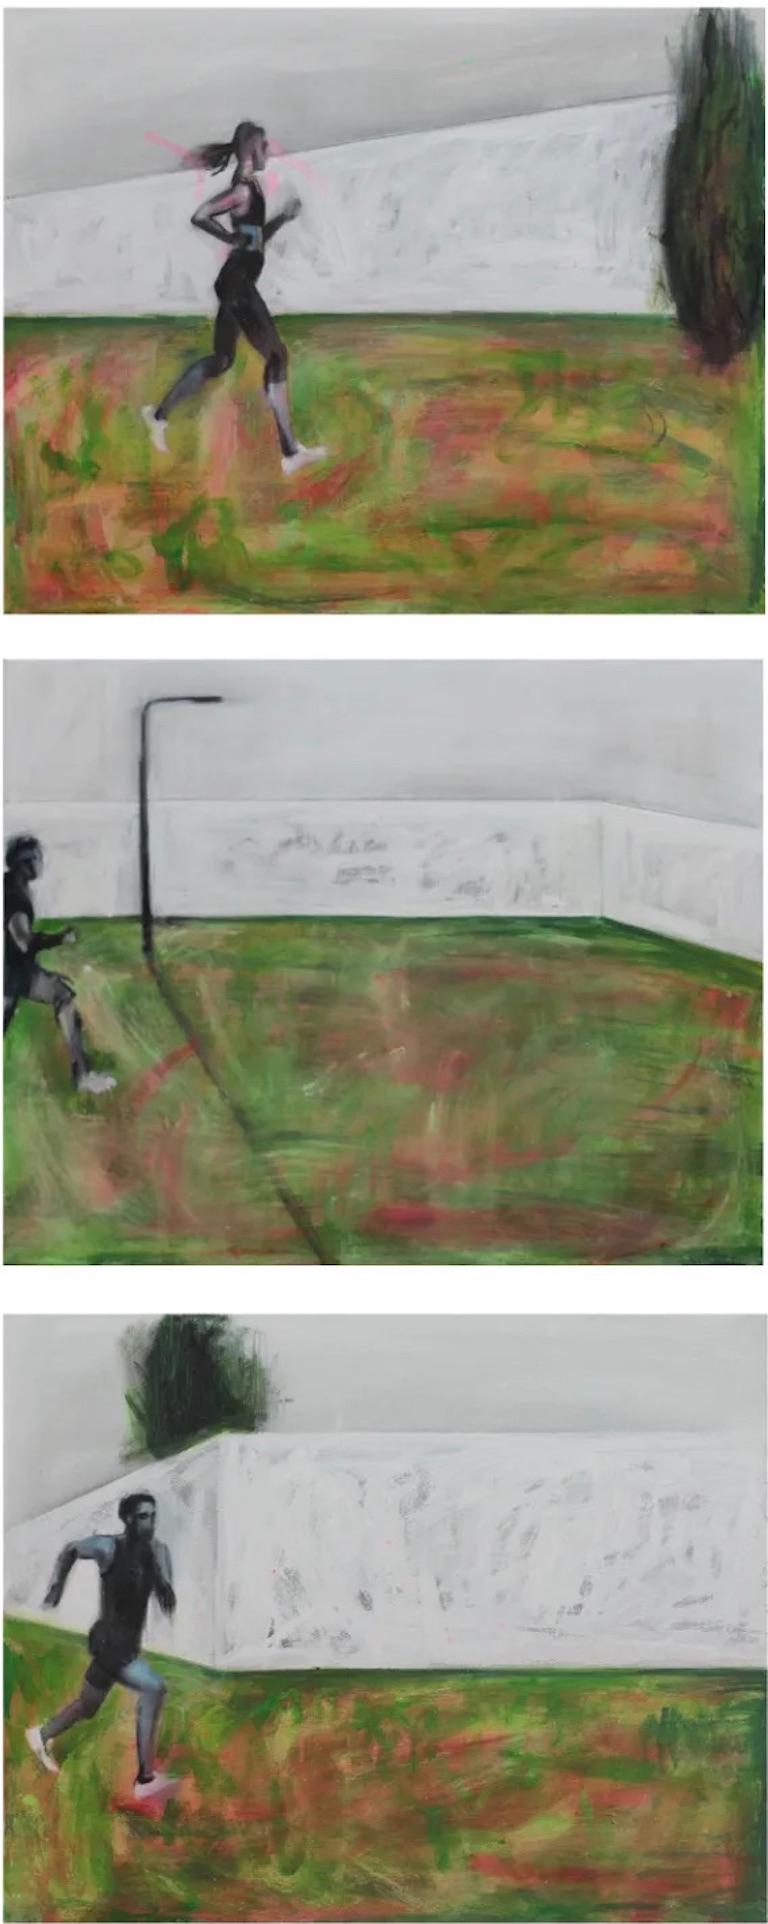 Running Man 1 ist ein vertikales Triptychon, bestehend aus 3 Gemälden von je 40 x 50 cm.

Das Triptychon kann als Fortsetzung von Katya Tsarevas Projekt "Story of one White House" von 2016 gesehen werden. In diesem Projekt untersuchte die Künstlerin